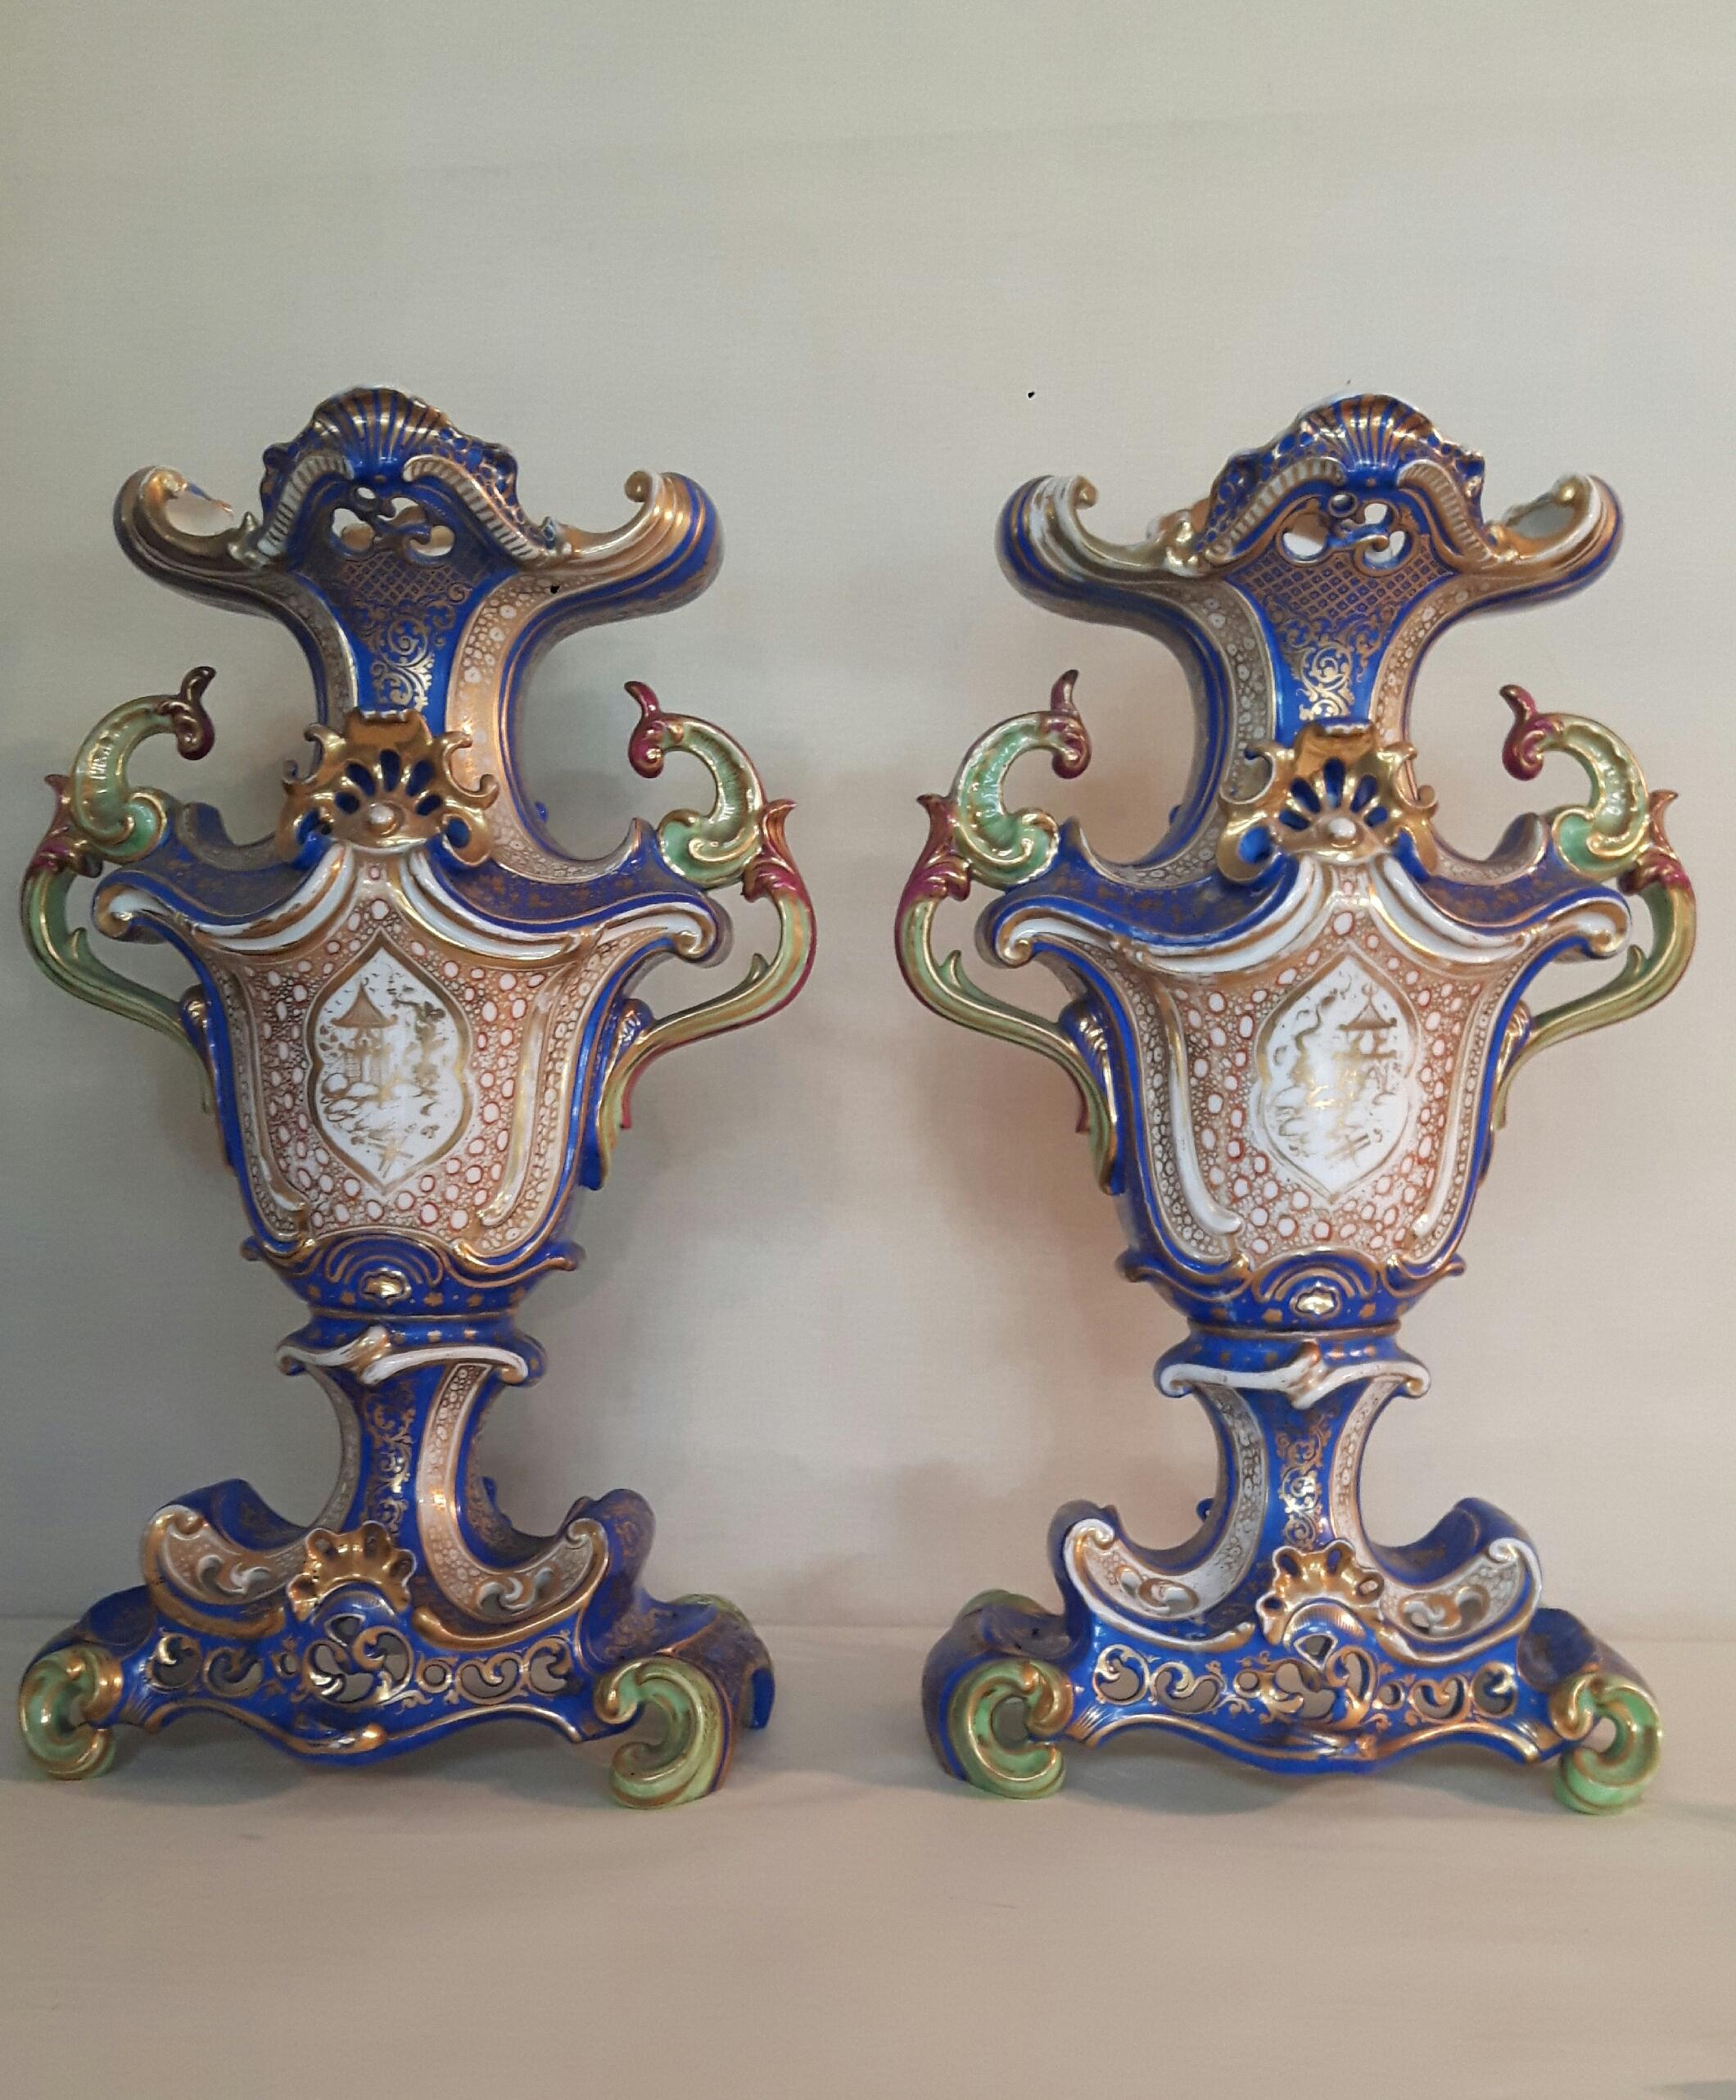 Une belle paire de vases de style Jacob Petit peints à la main avec des scènes impériales chinoises de vie à la cour. Le dos des vases est finement décoré de motifs de chinoiseries dorées.